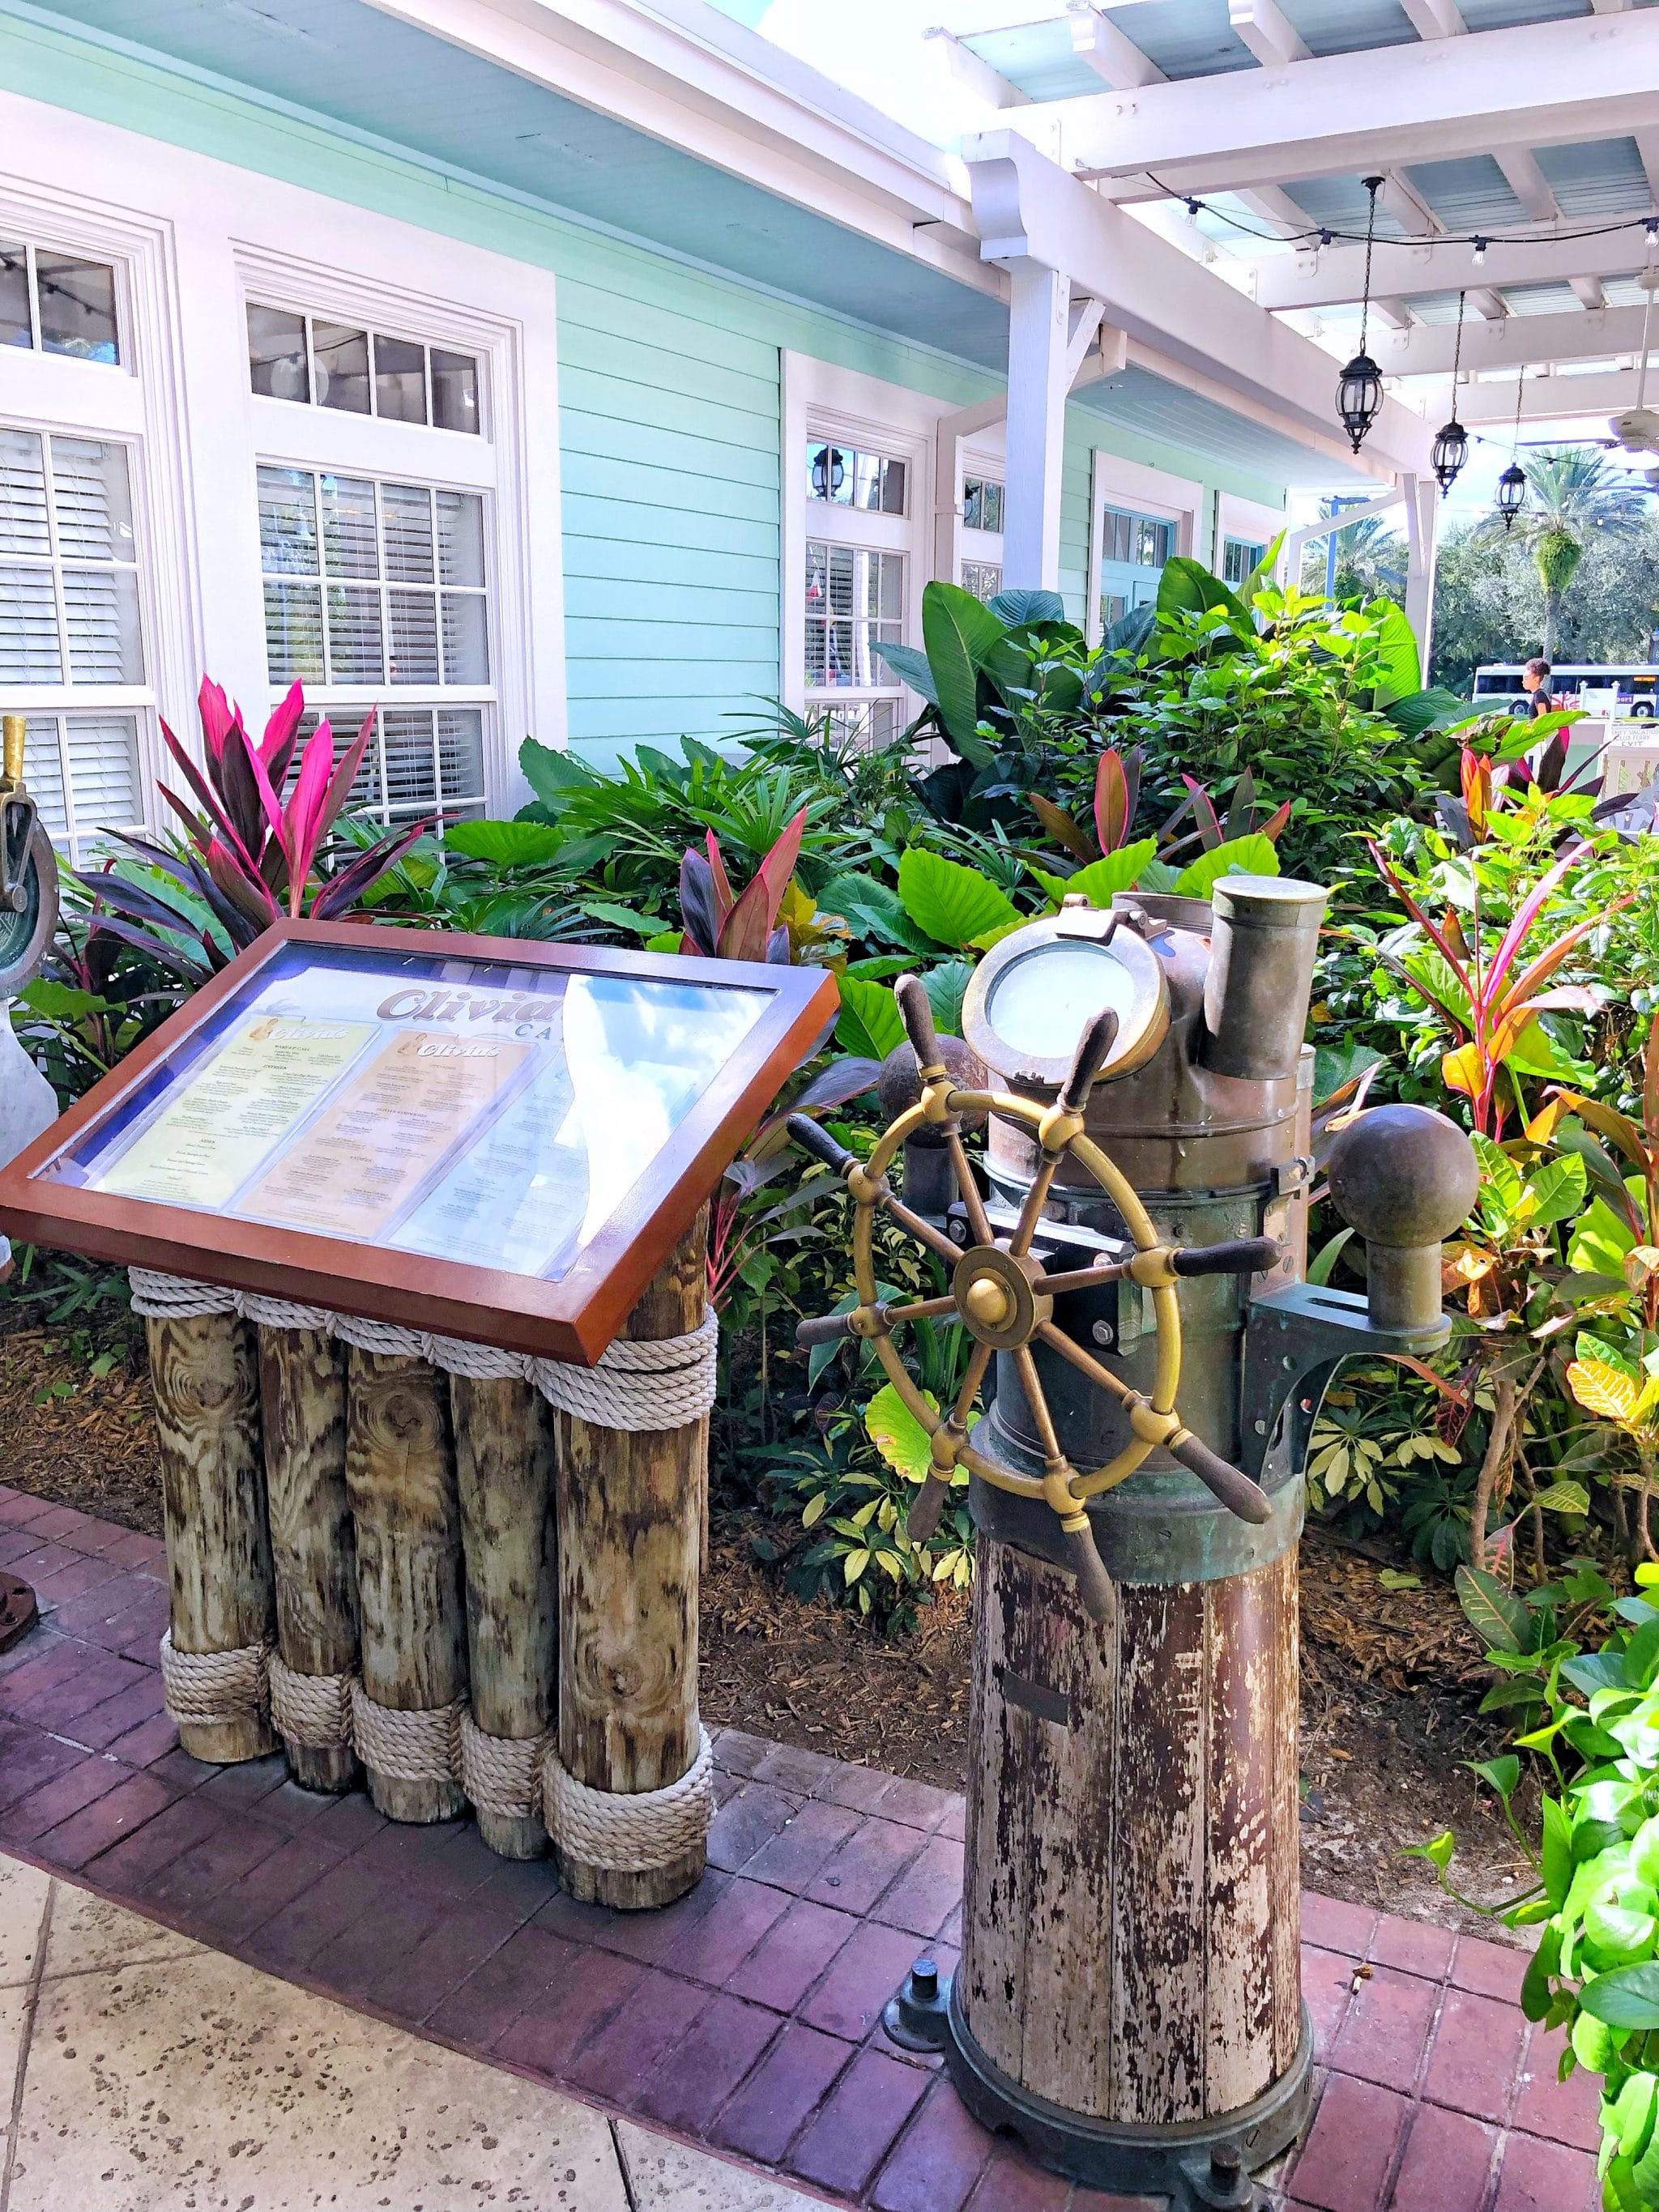 Olivia’s Cafe Vegan Review at Disney’s Old Key West Resort in Walt Disney World